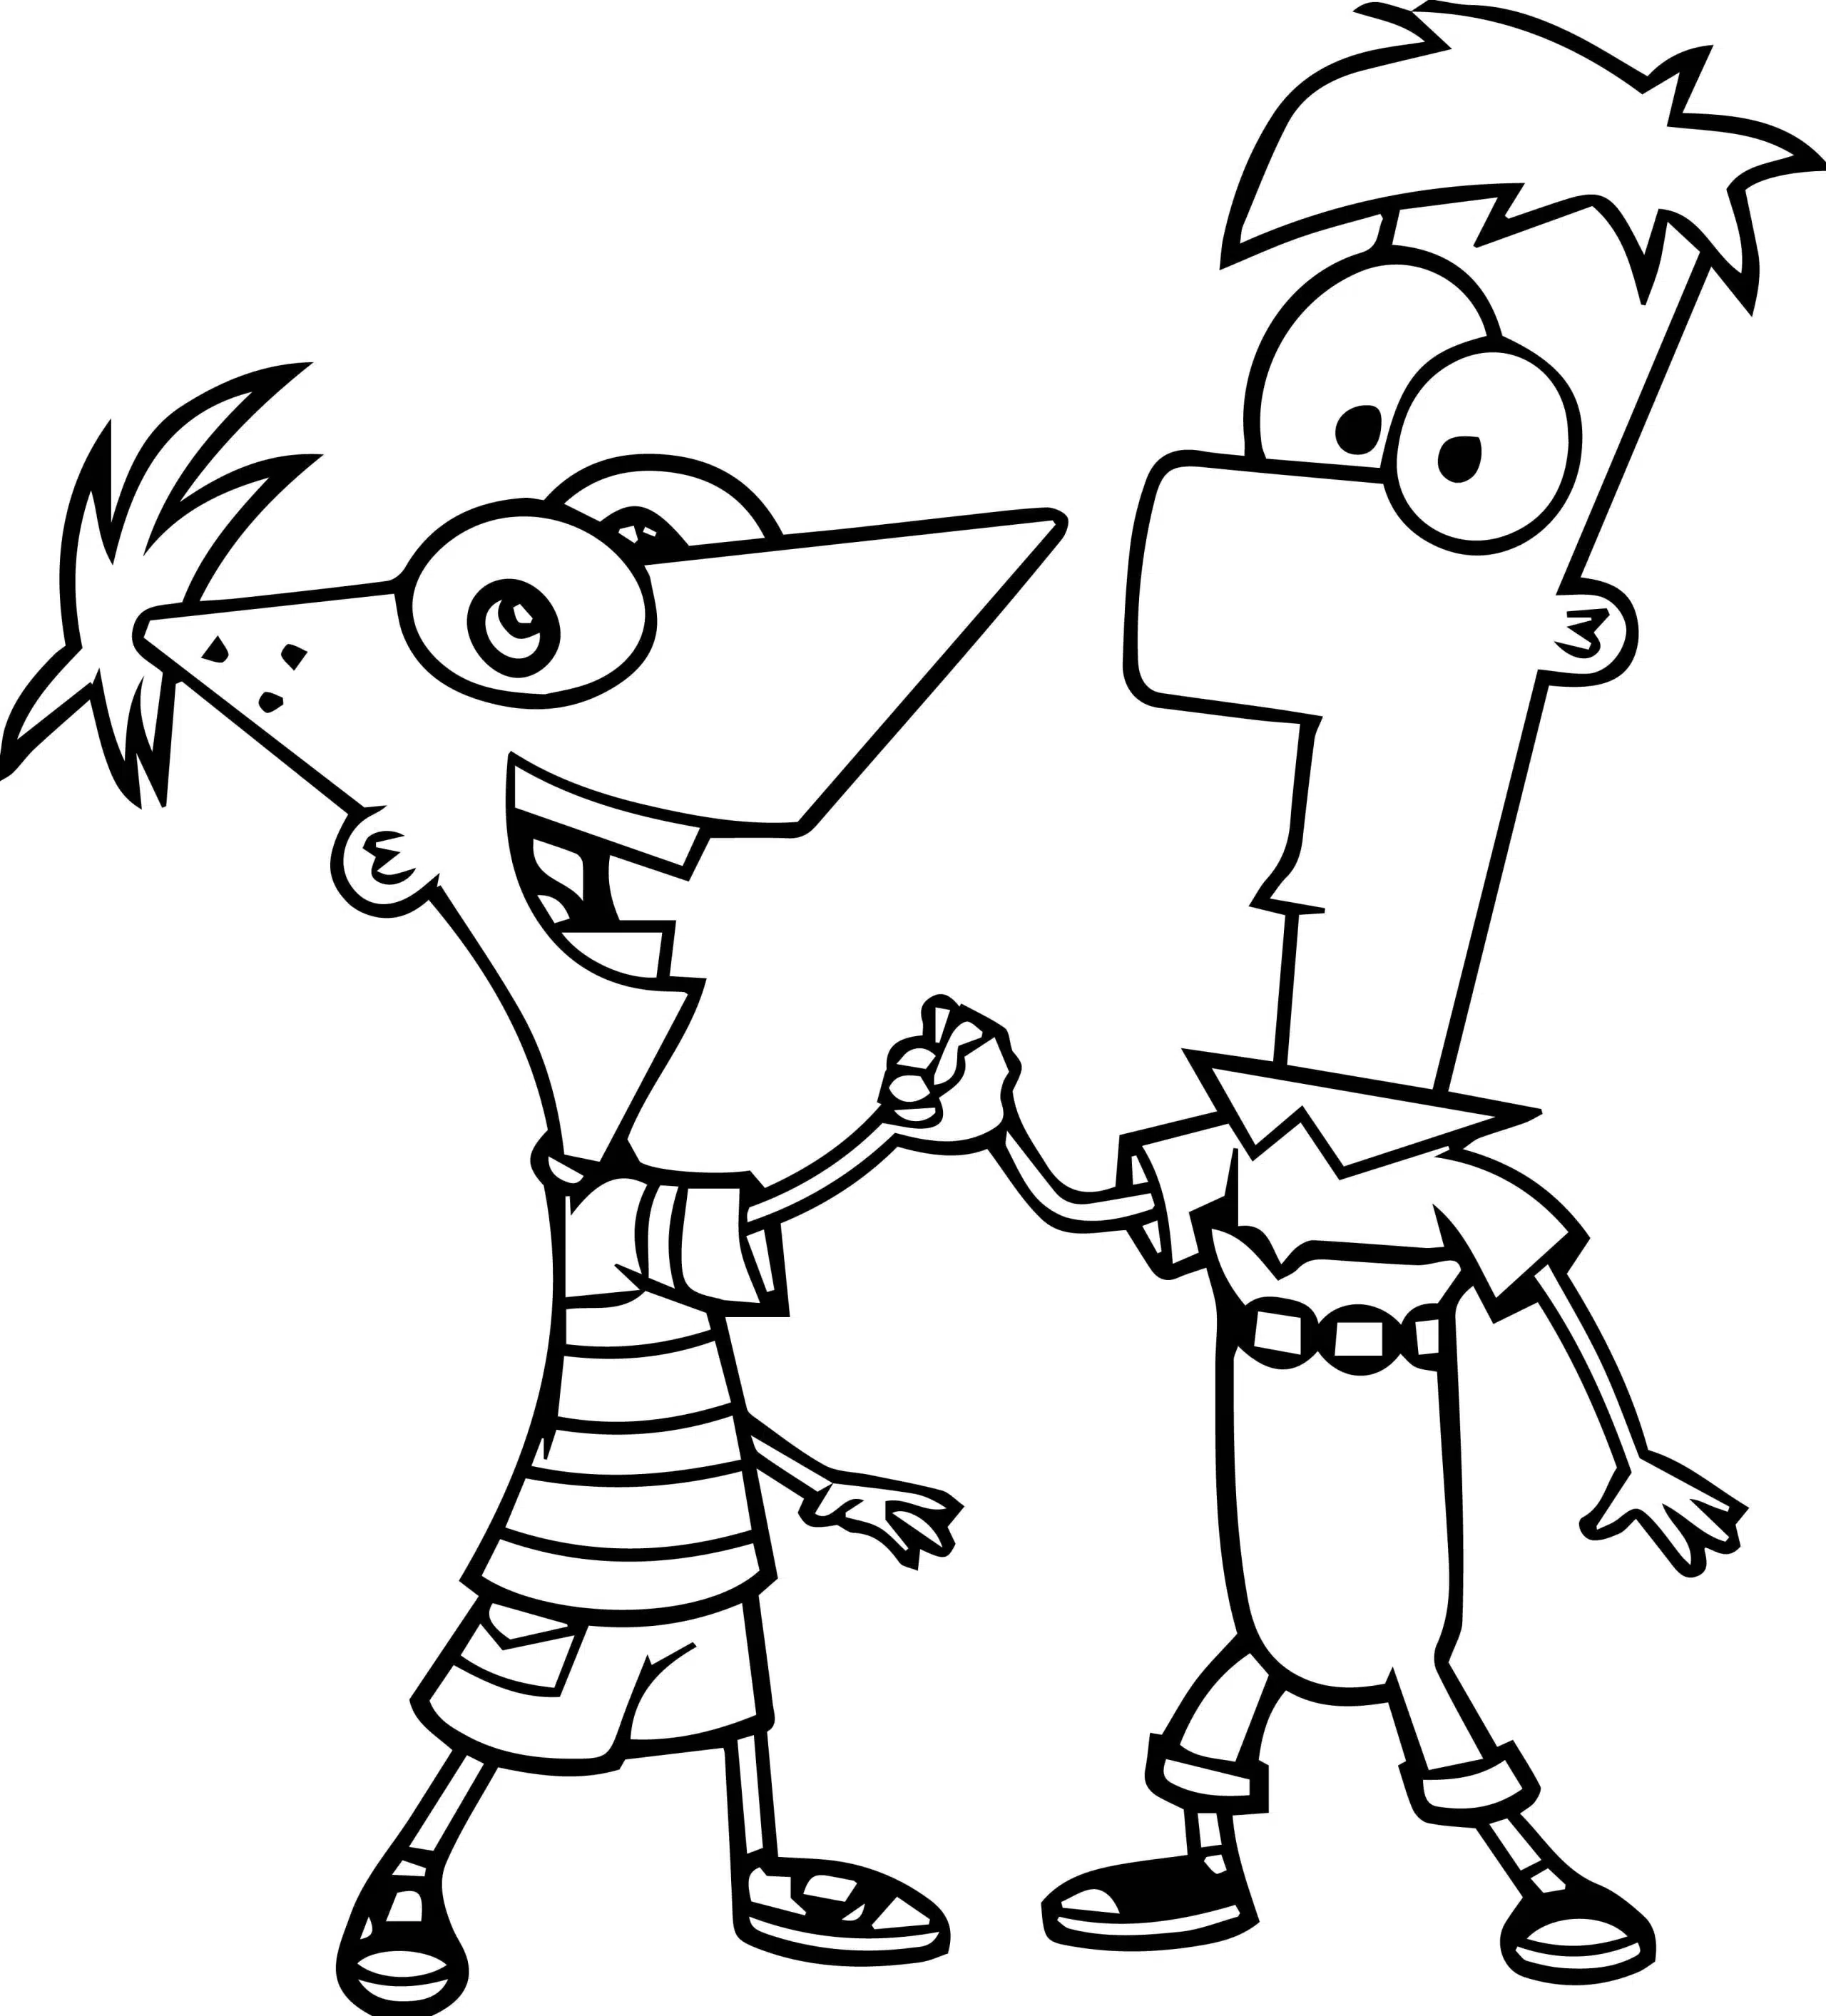 Phineas und Ferb 24